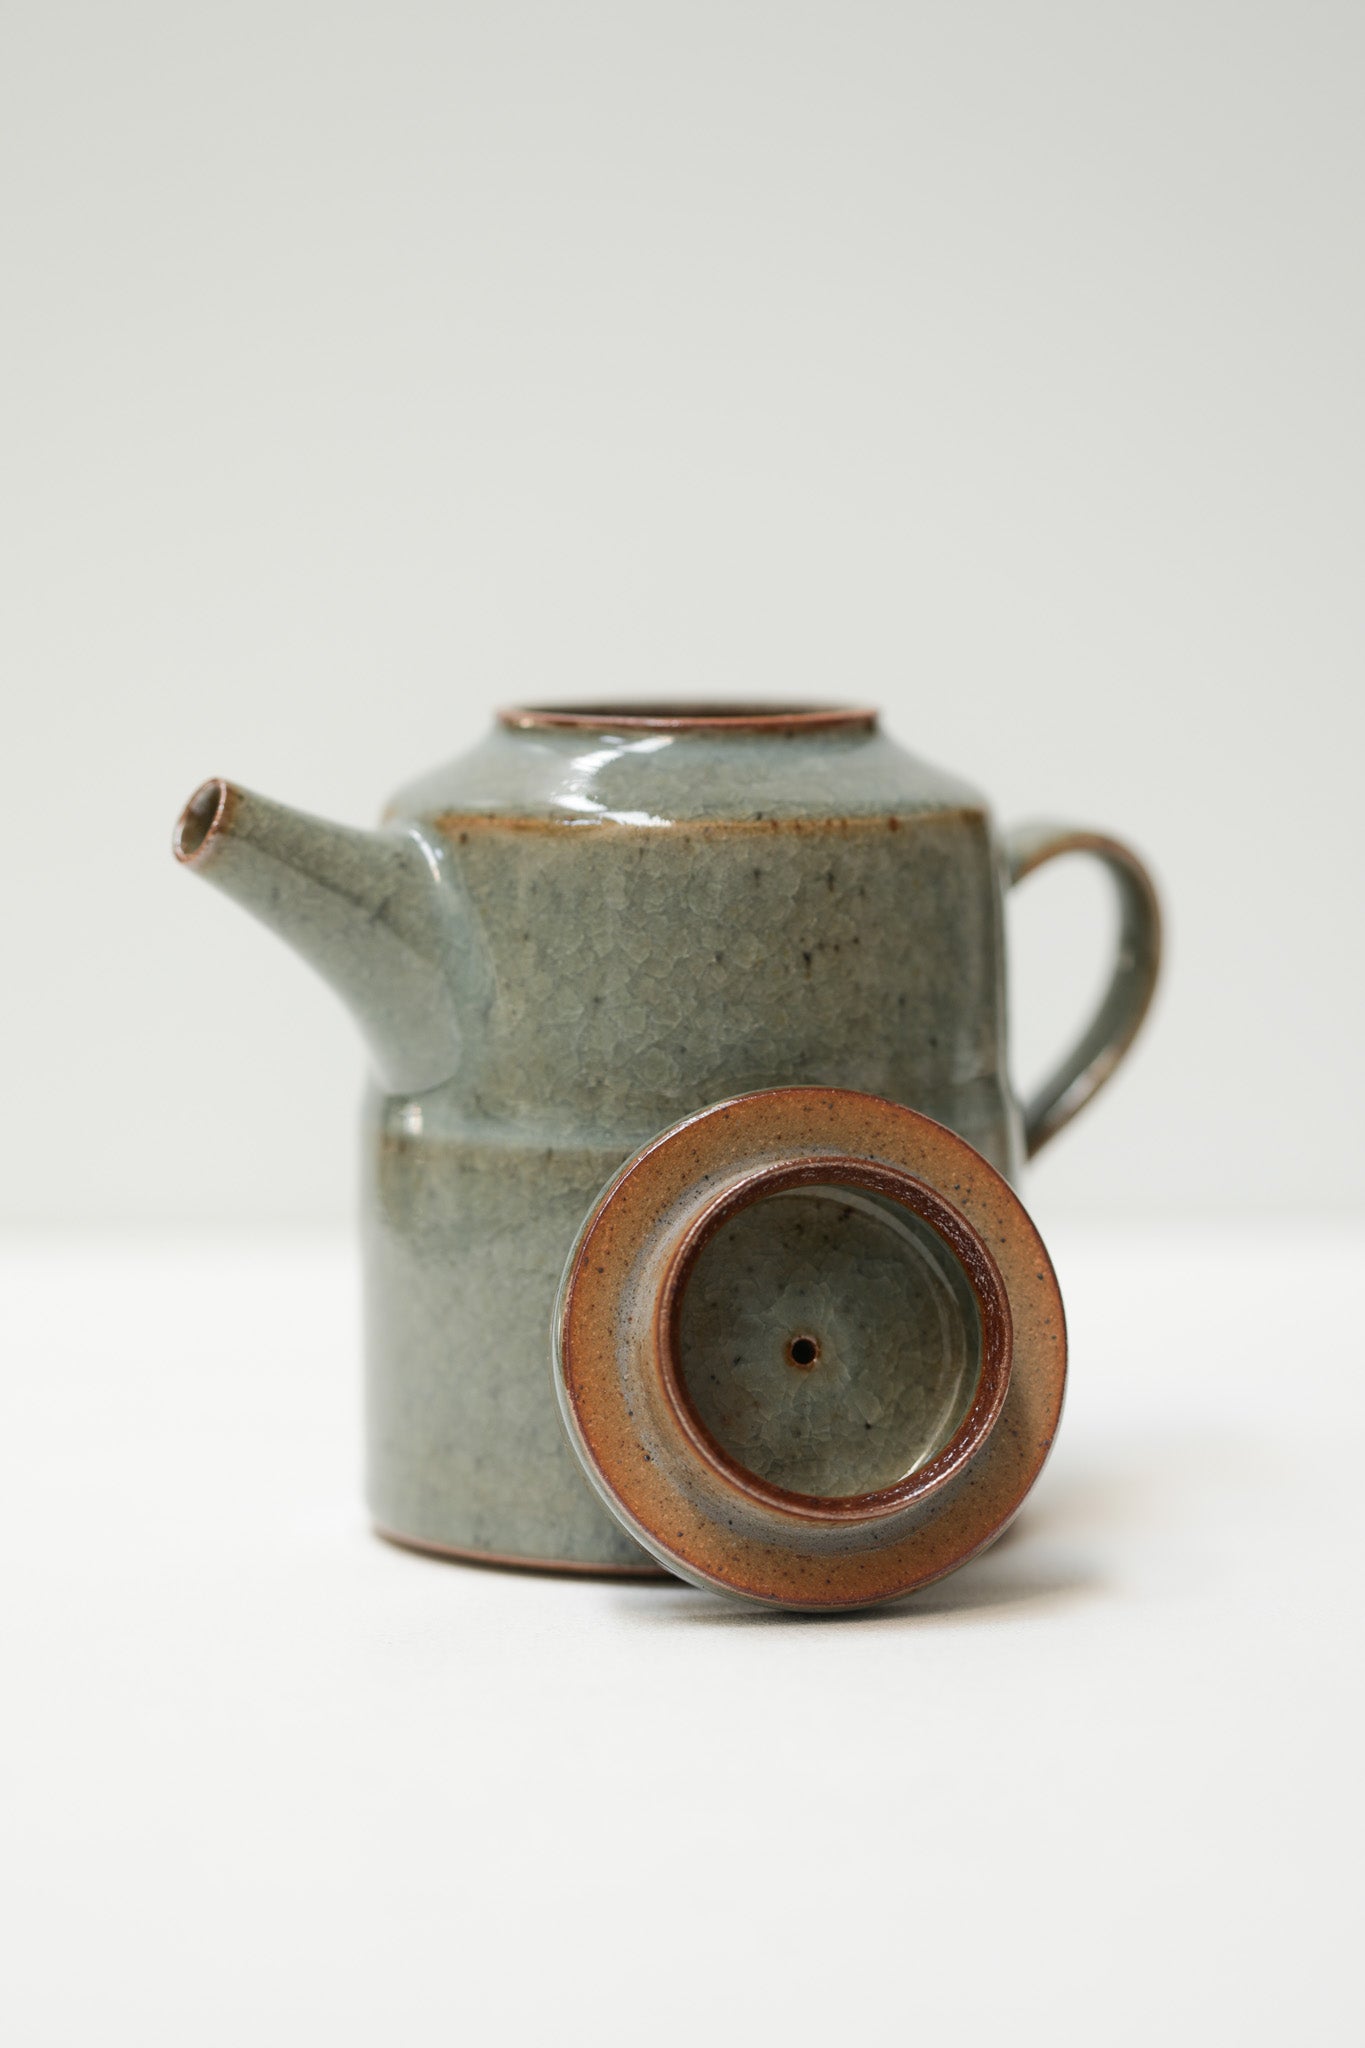 Florian Gadsby: Stepped Teapot